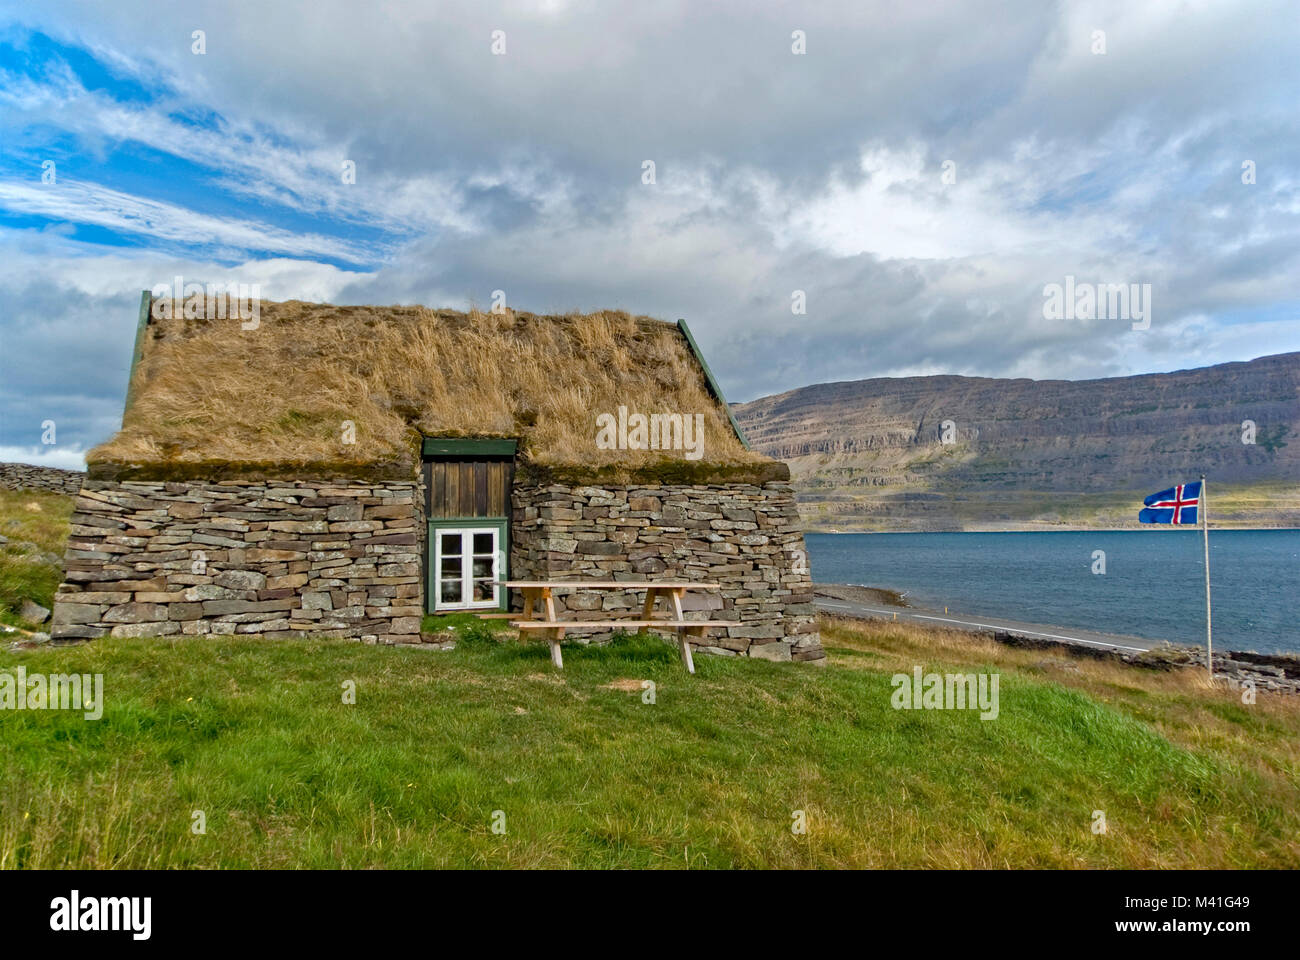 Coffe house avec toit de chaume, situé dans la péninsule de Vatnsnes,près de la côte,l'Islande Banque D'Images